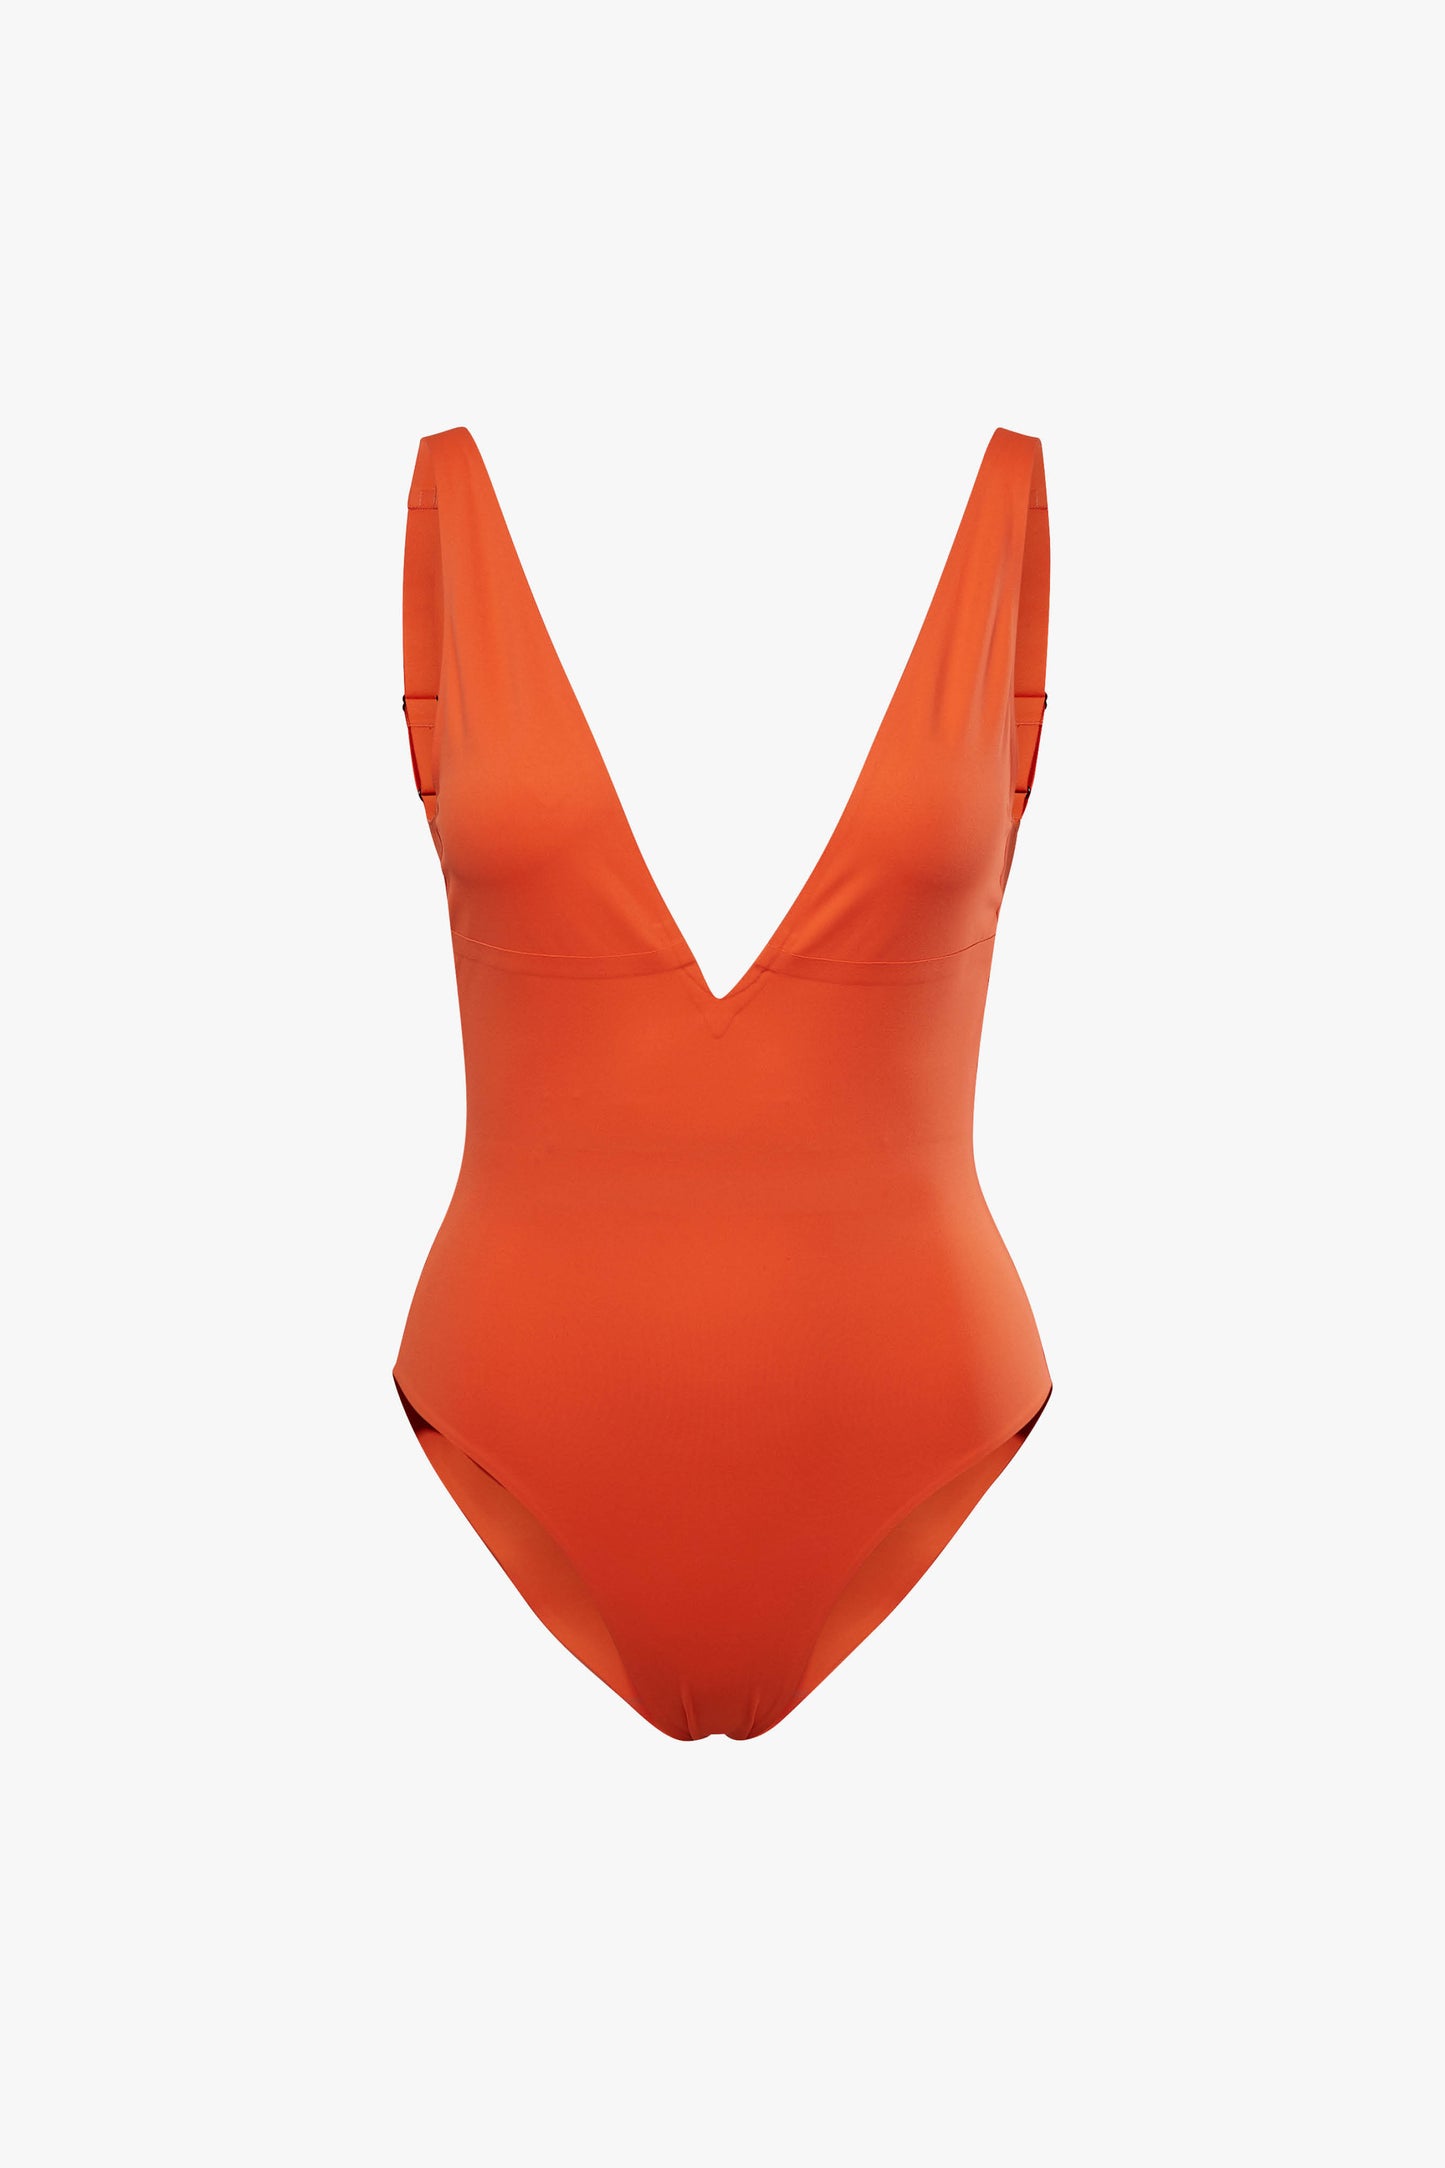 Reebok X VB Bodysuit in Bright Orange